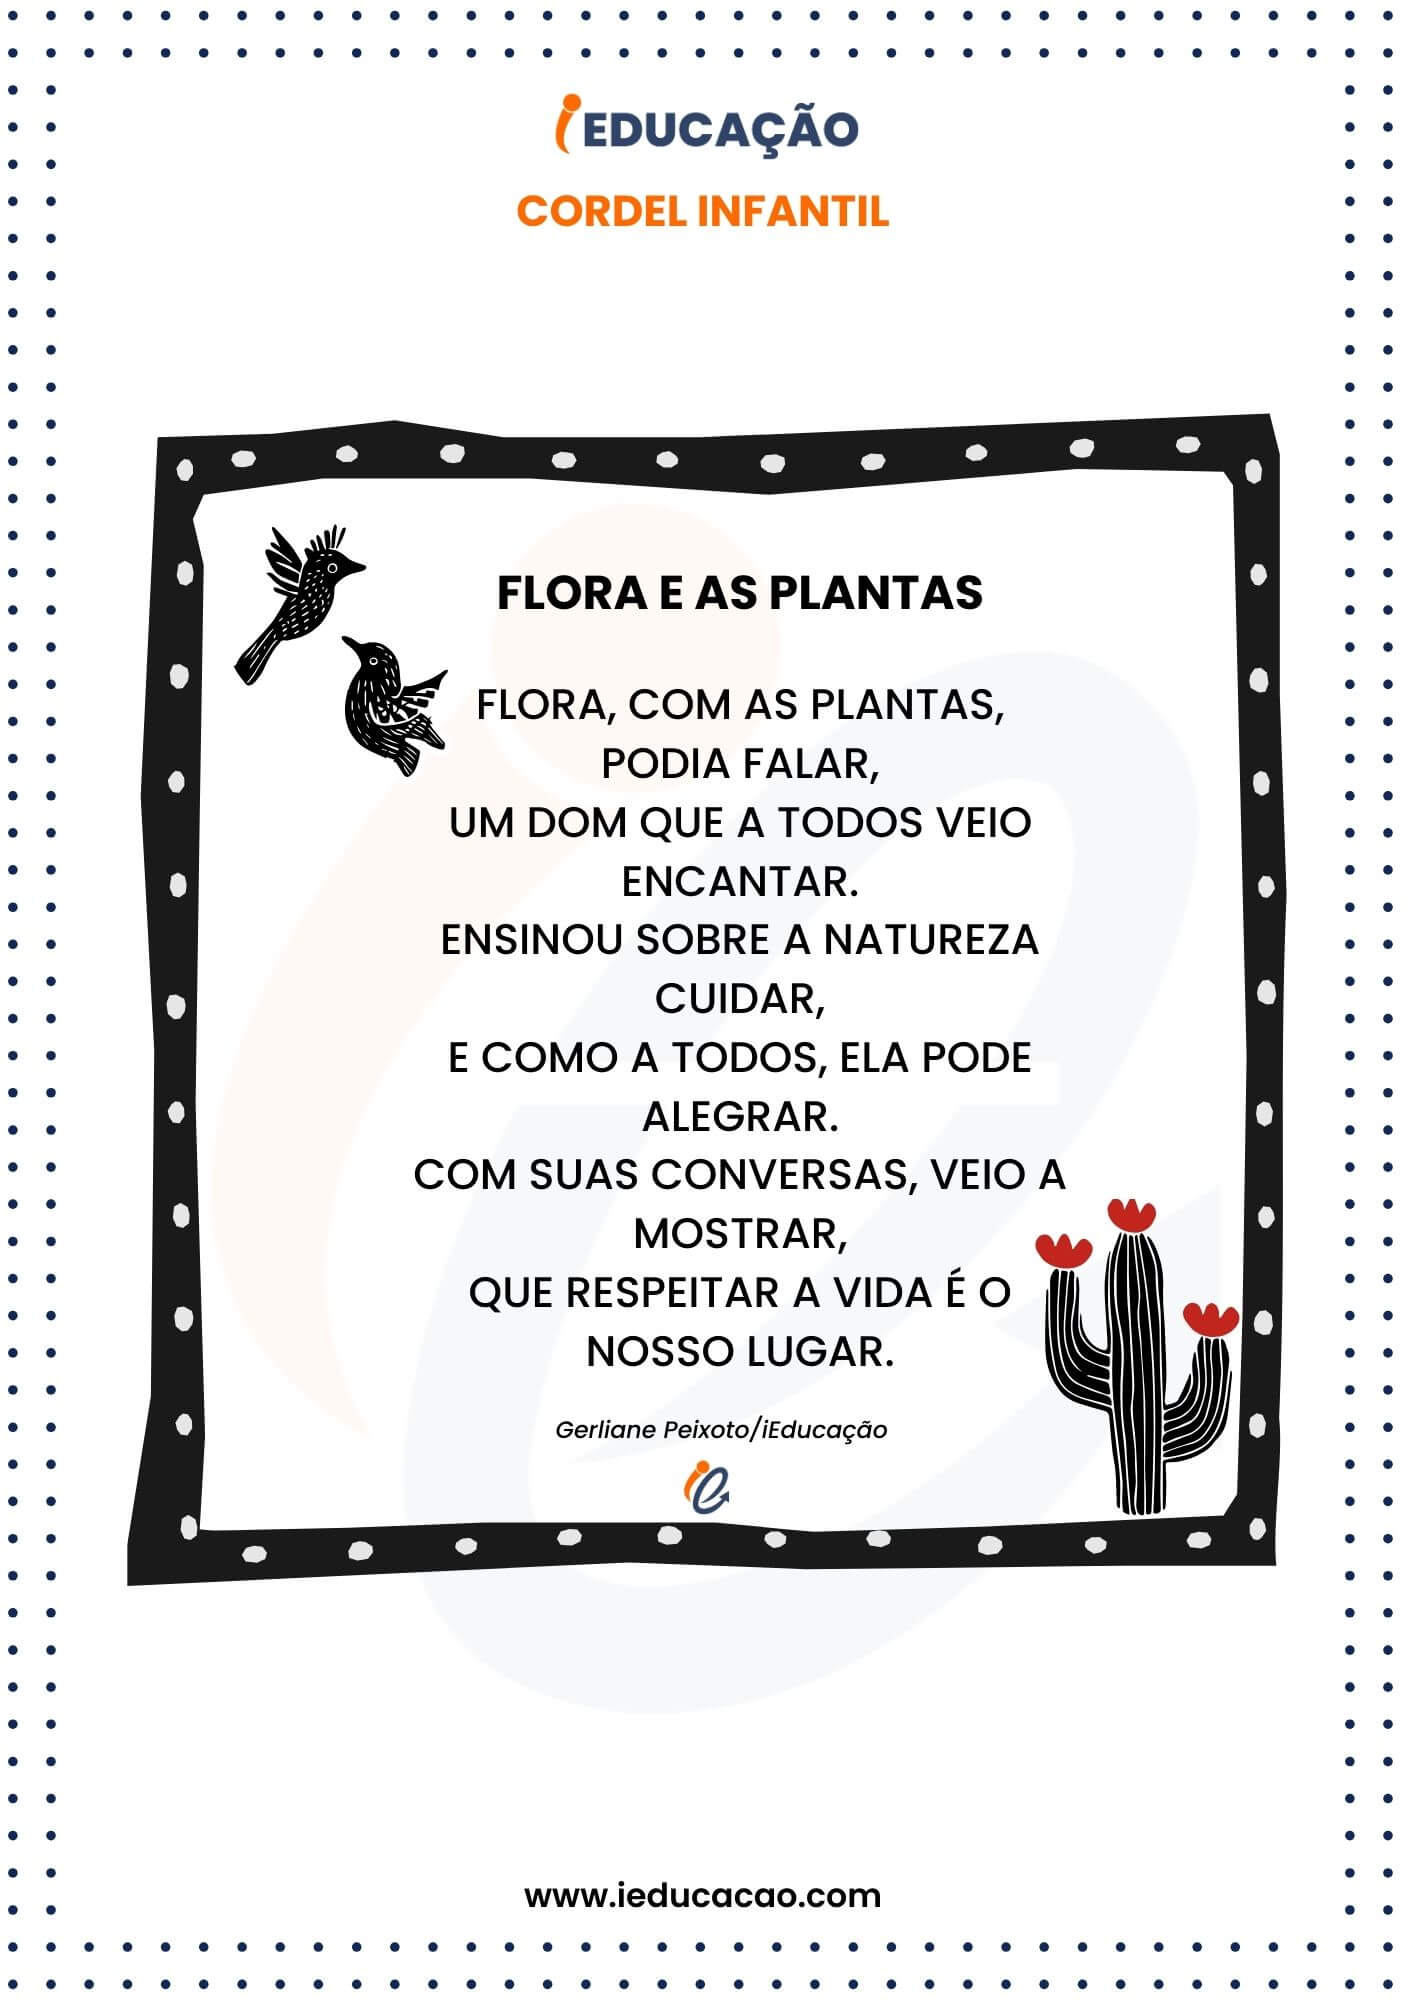 cordel infantil Flora e as Plantas